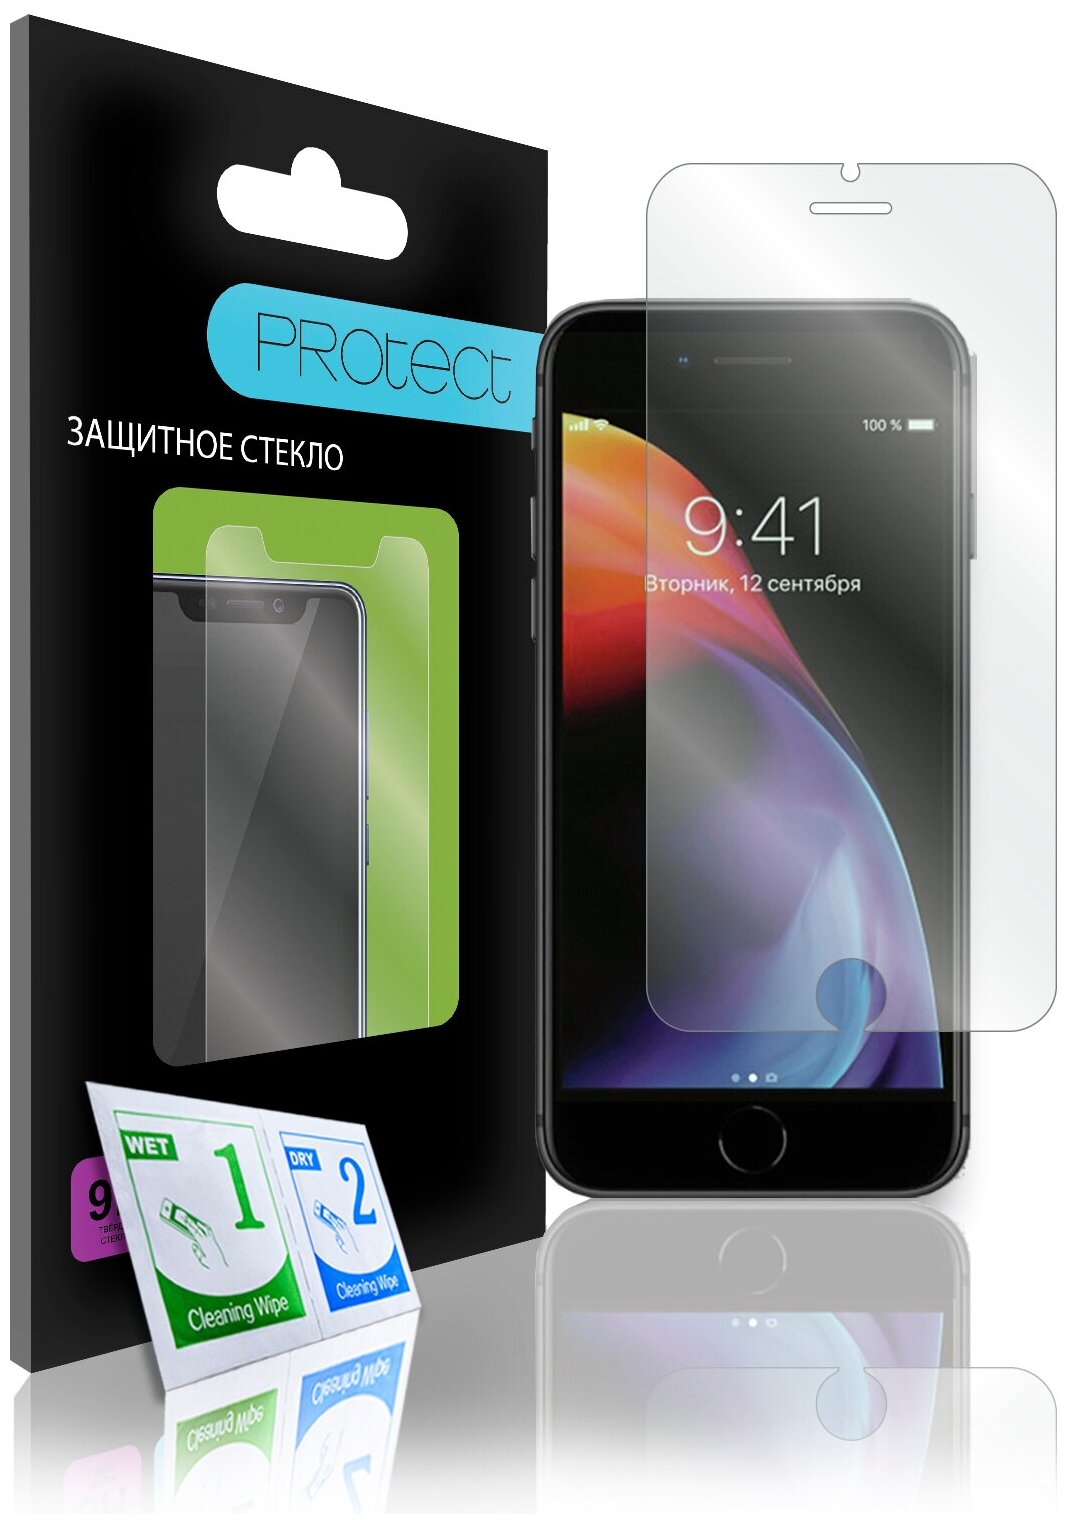 Защитное стекло PROtect для iPhone 6 6s 7 7s 8 SE 2020 на Айфон 6 6s 7 7s 8 SE 2020 На плоскую часть экрана 02 мм